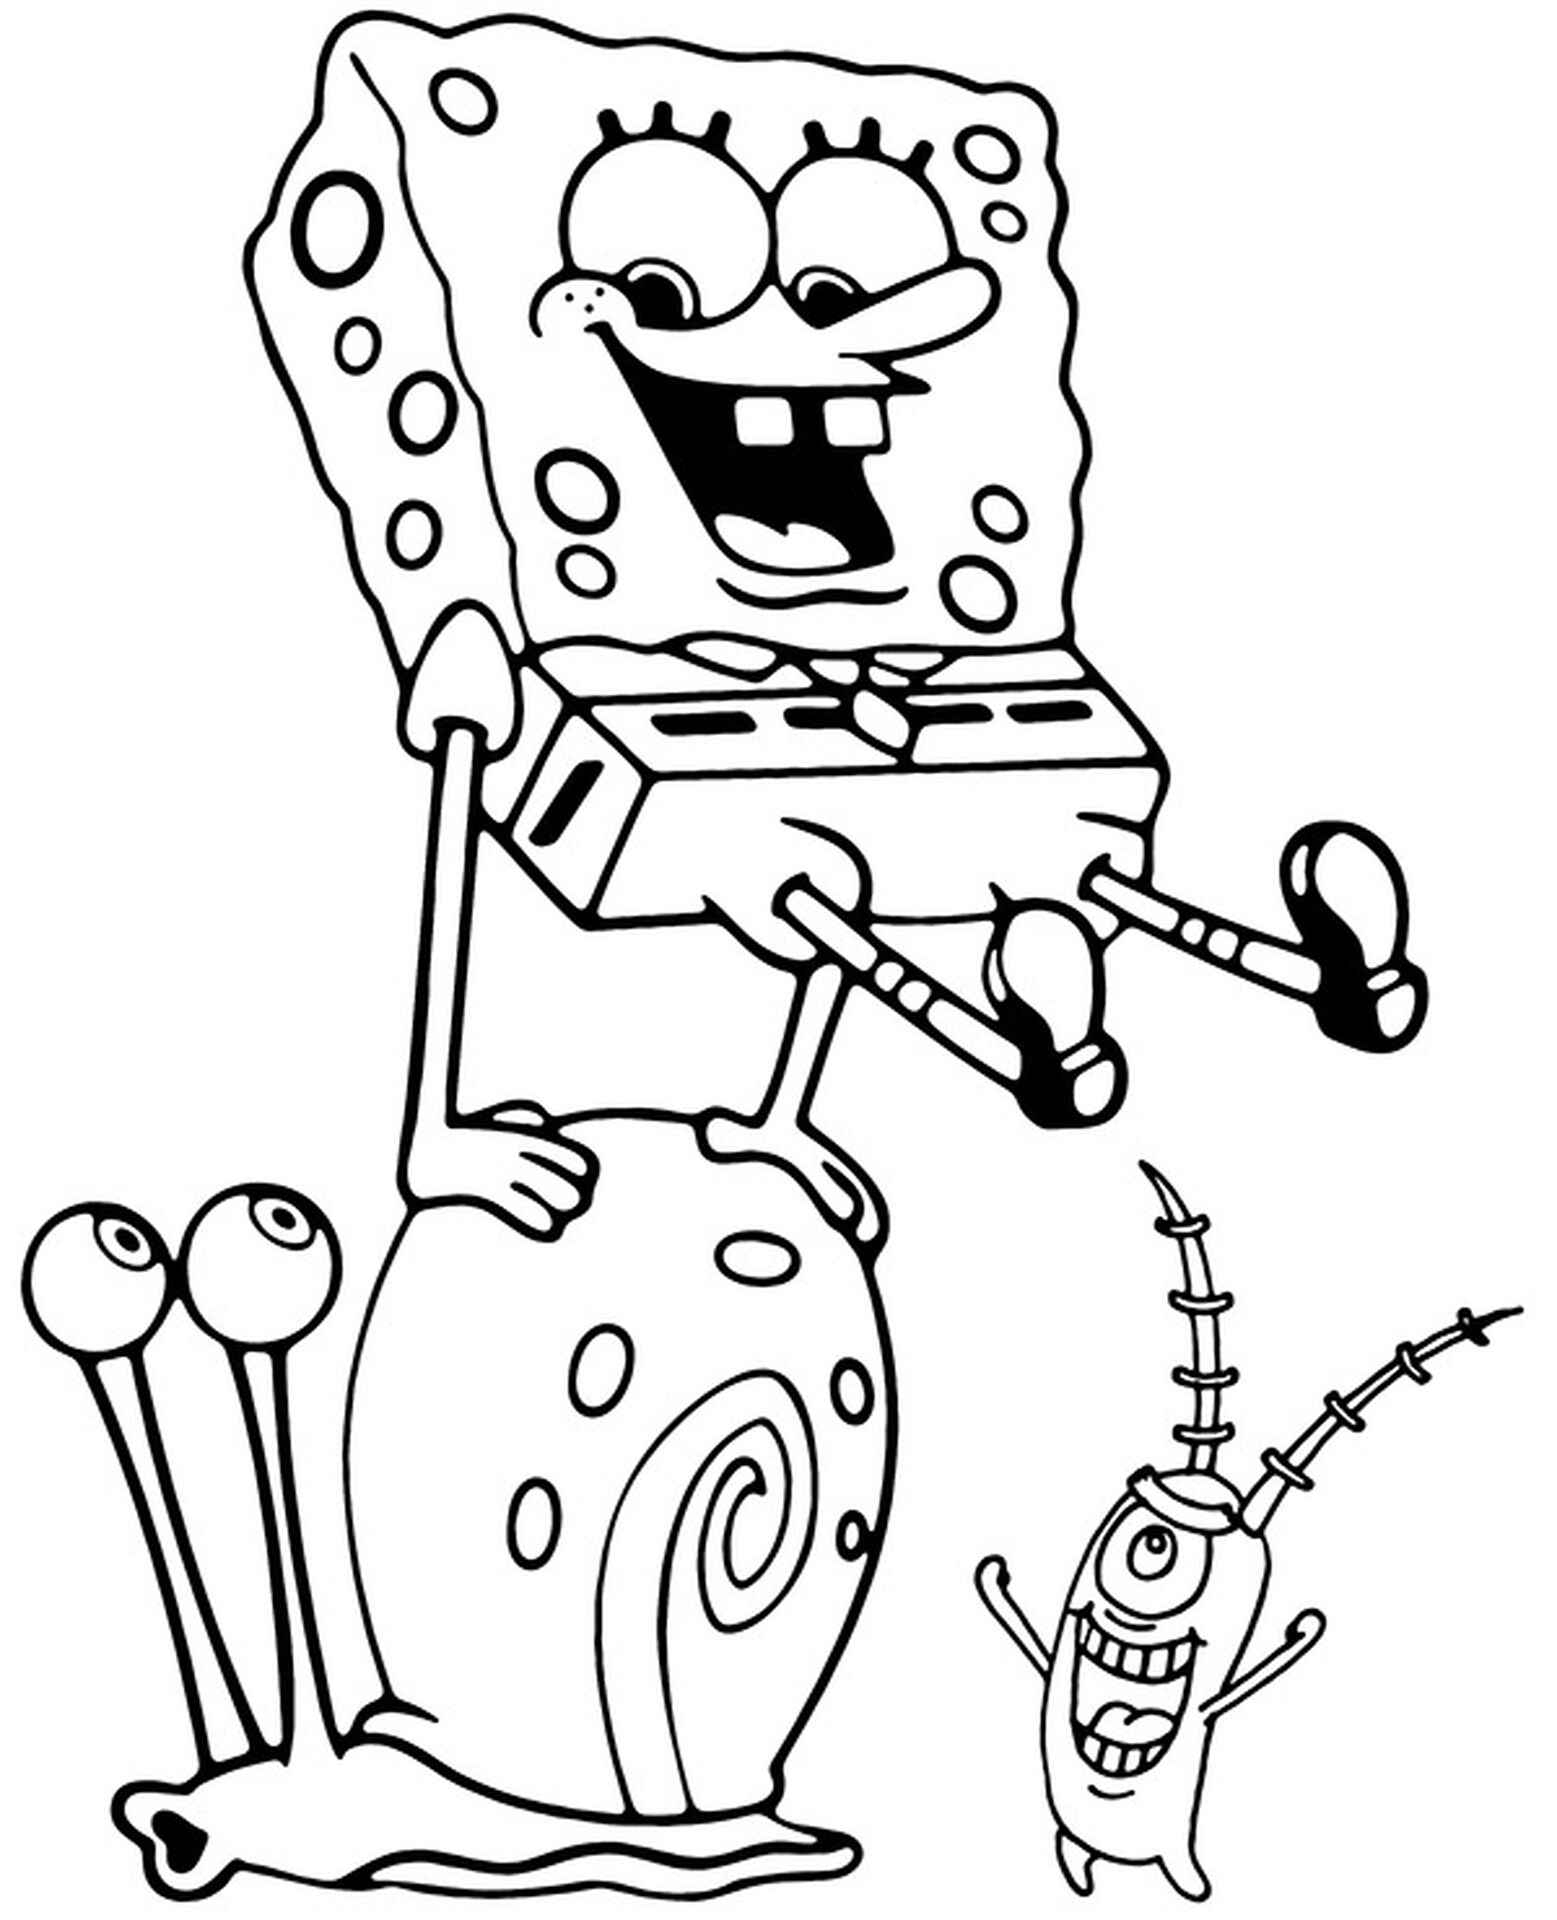 Как нарисовать планктона из Спанч Боба поэтапно